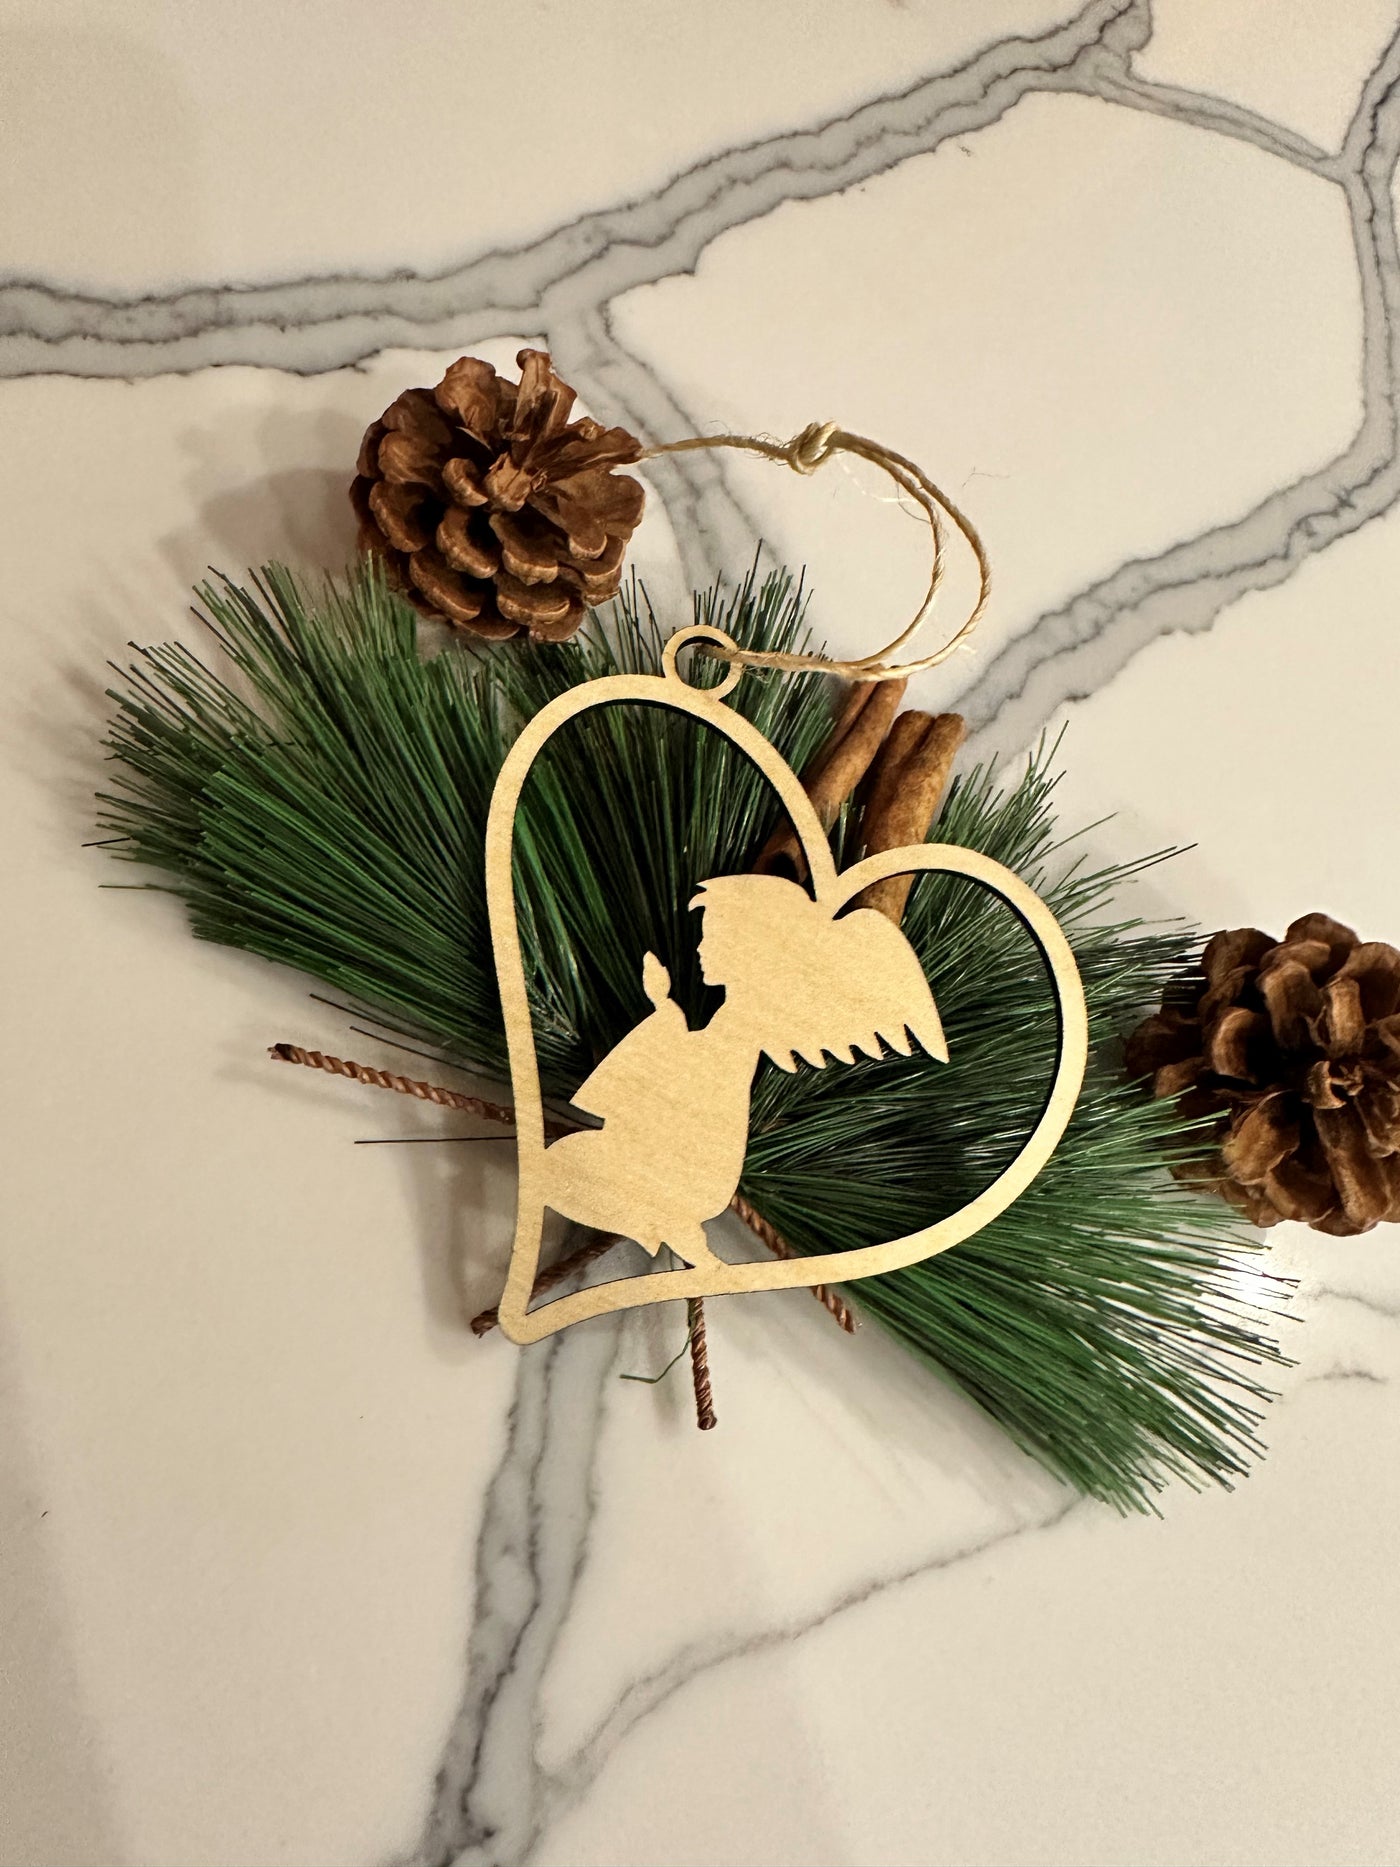 Christmas Ornament Hanger "Angelheart" - Set of 2